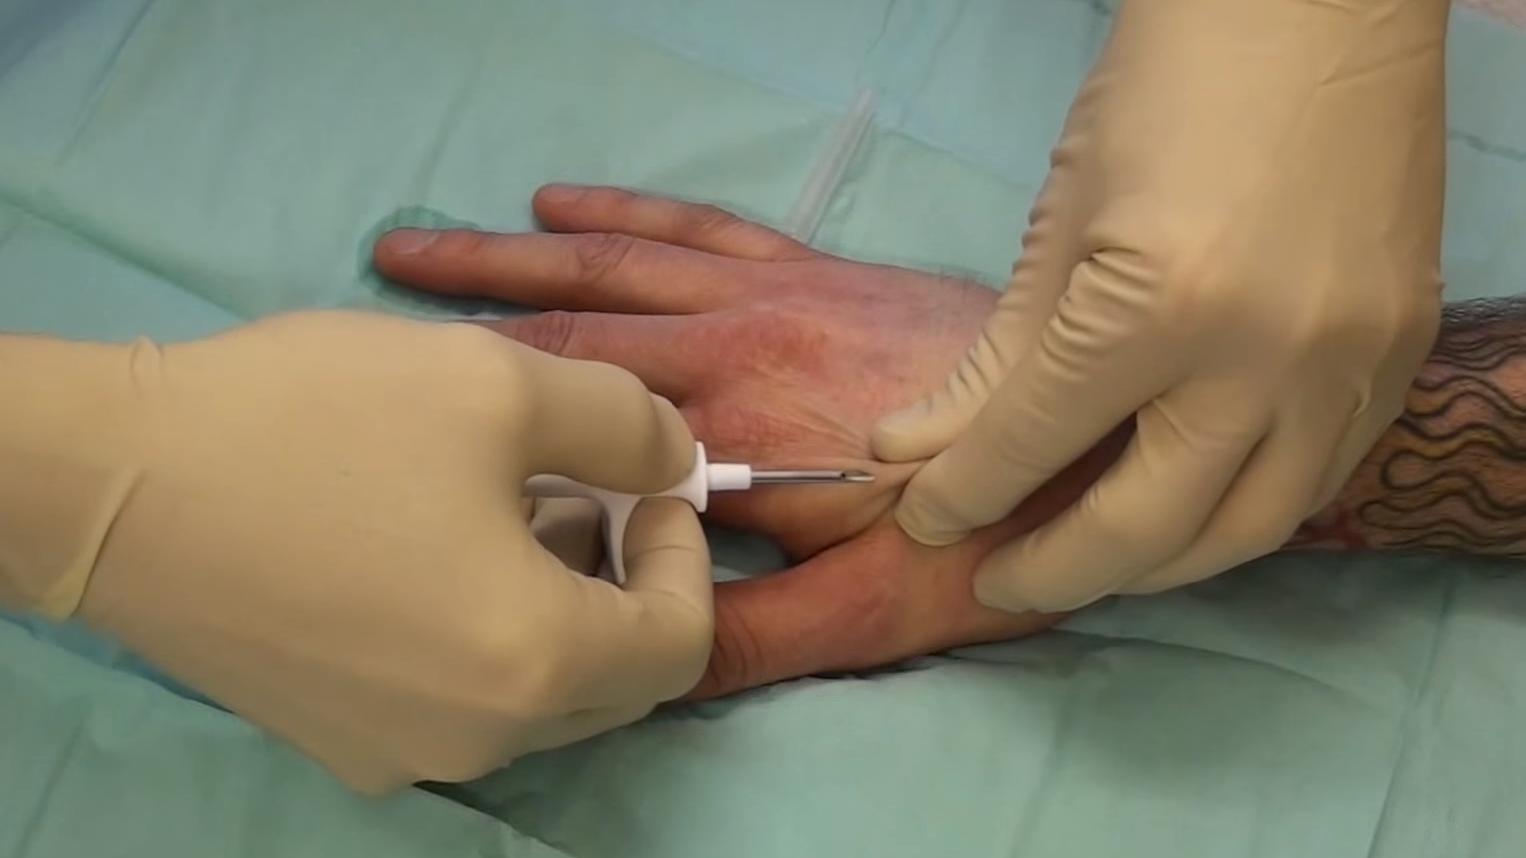 Slik så det ut da implantatet ble injisert i hånden. Foto: Patrick Lanhed/YouTube